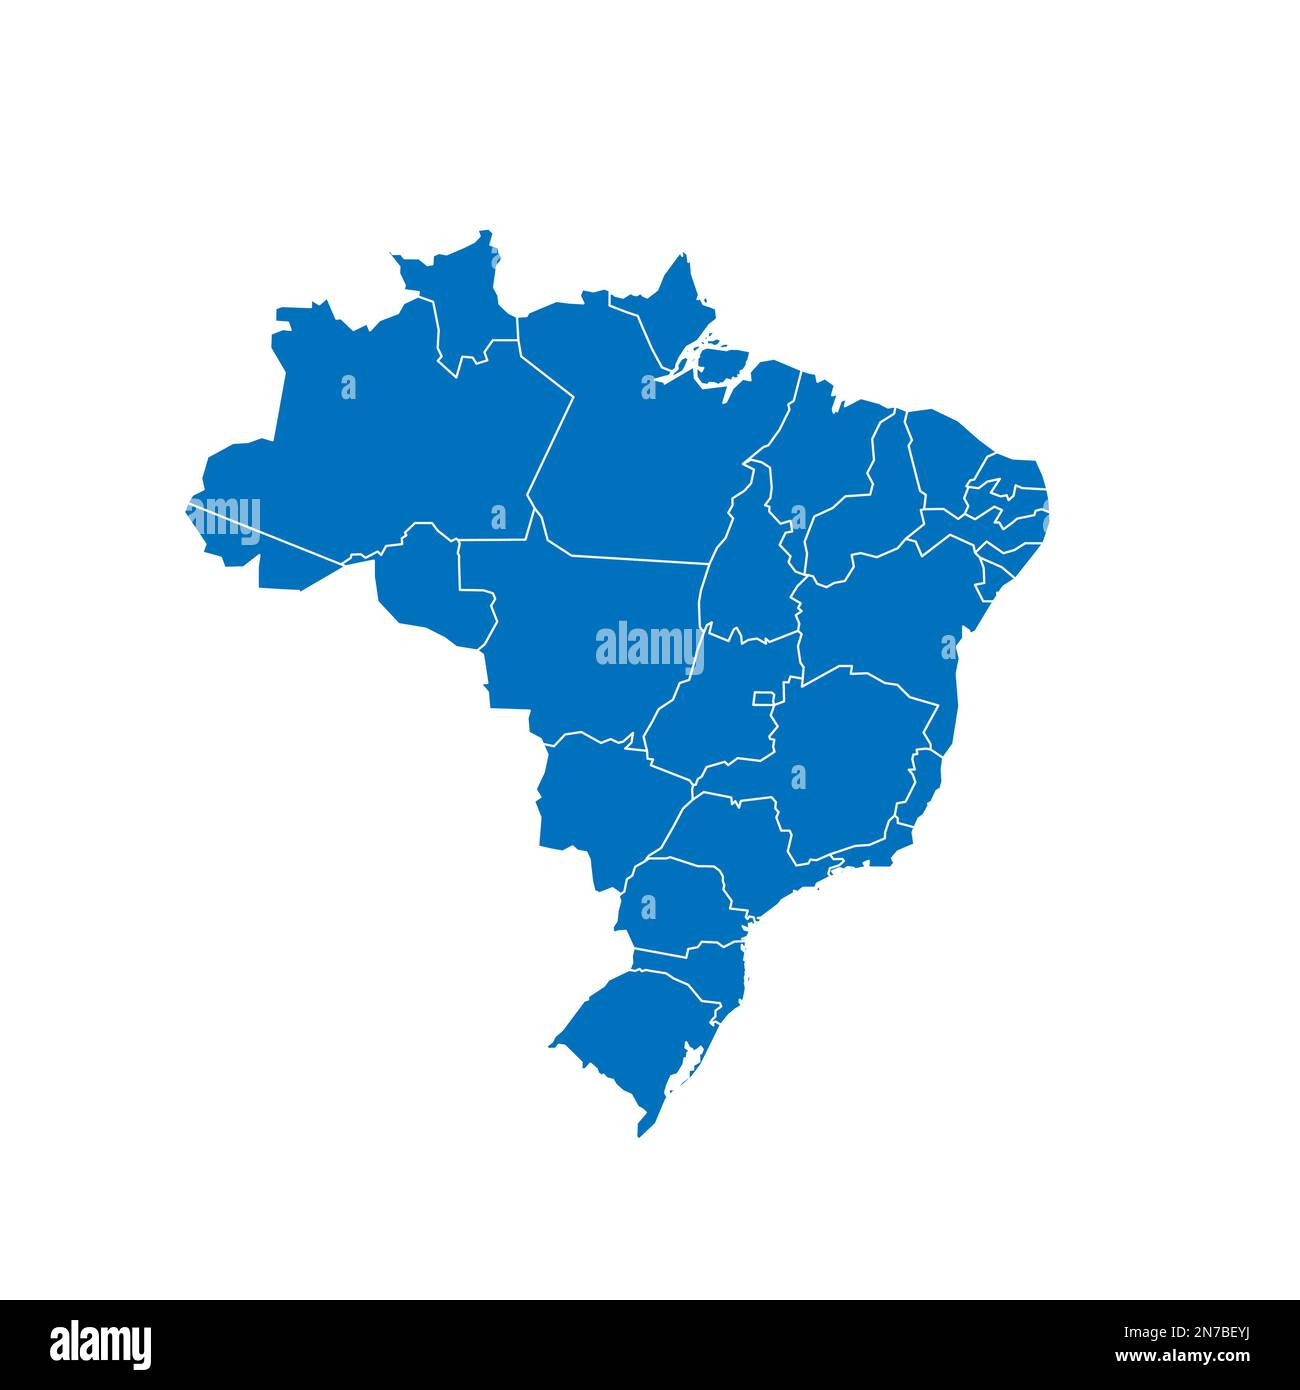 Politische Karte Brasiliens der Verwaltungsabteilungen - Föderative Einheiten Brasiliens. Blau leuchtende leere Vektorkarte mit weißen Rändern. Stock Vektor